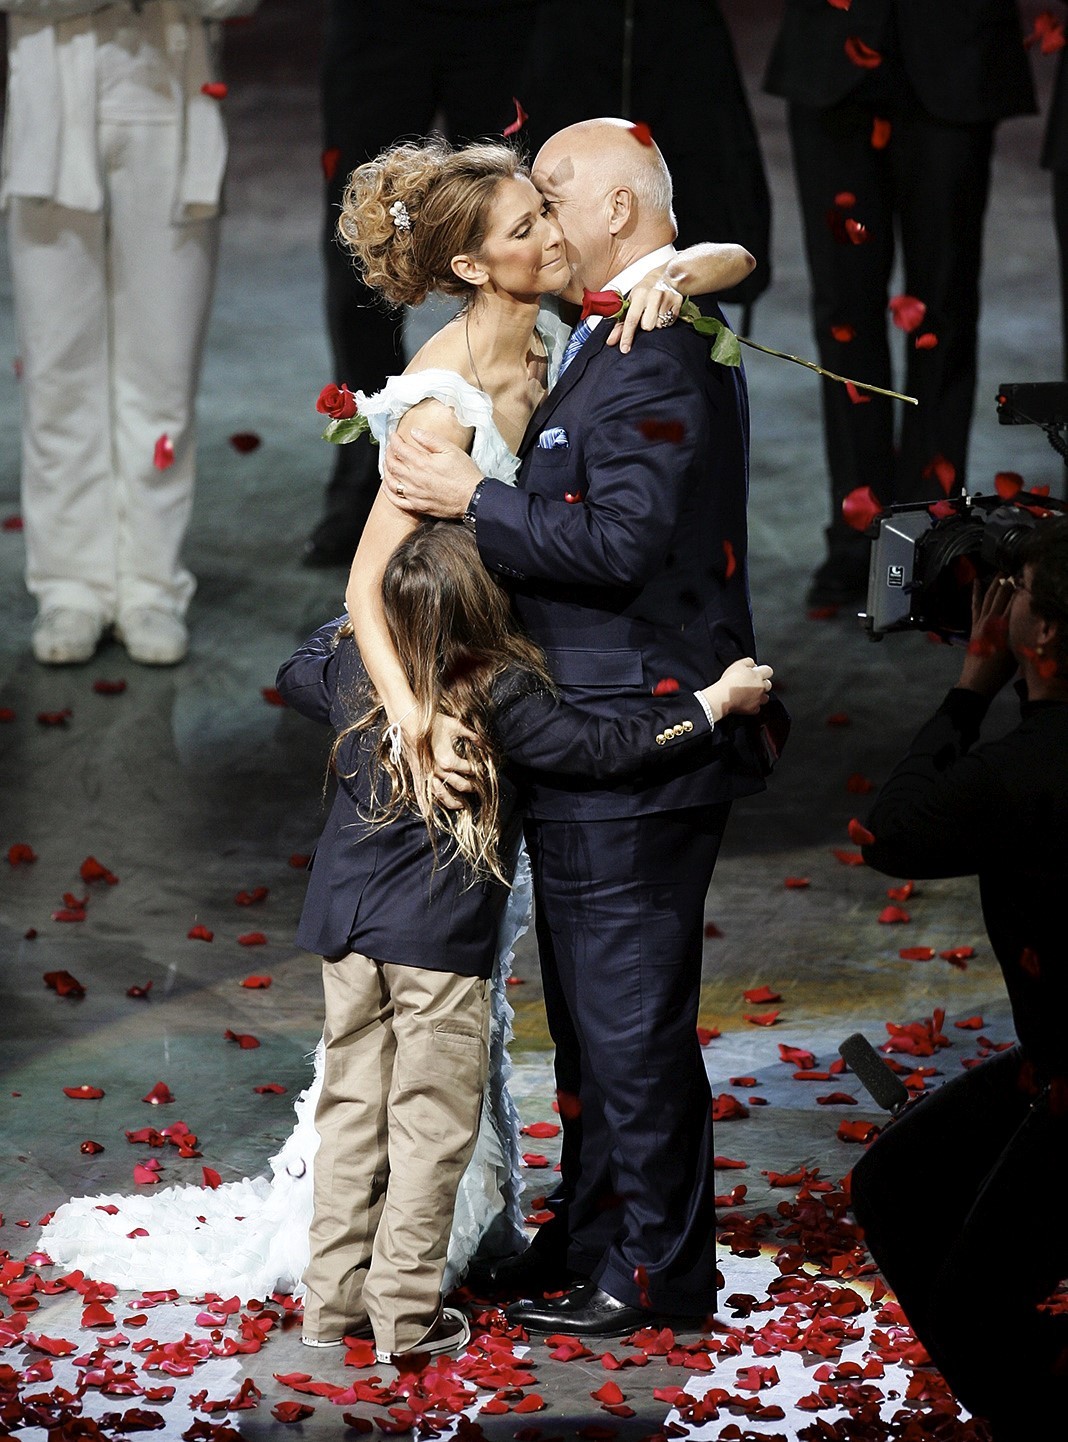 Селин Дион, Рене Анжелил с сыном Рене-Шарлем после финального выступления на шоу «A New Day...»